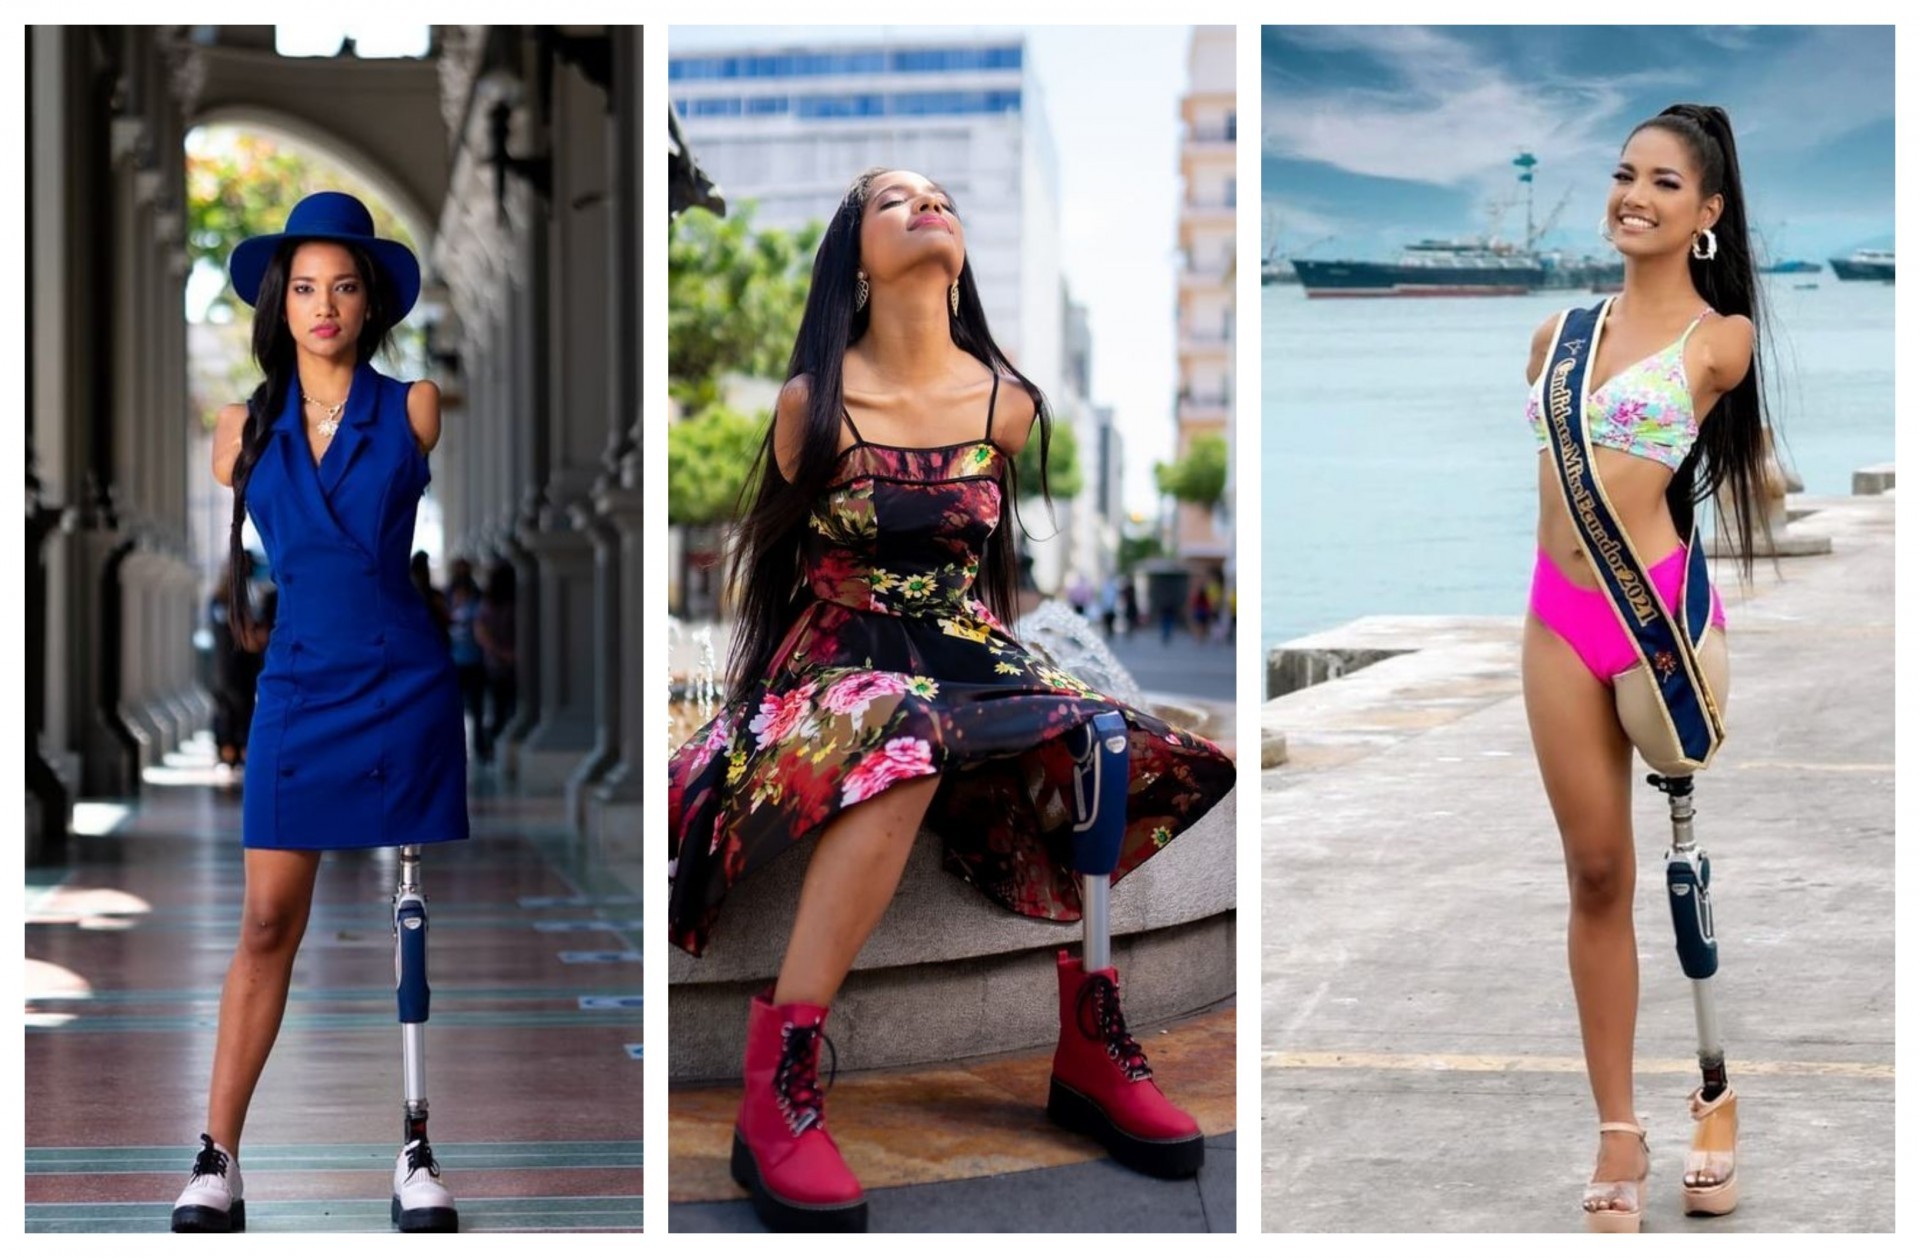 Викторија на пет години ги загуби двете раце и една нога: Денес е манекенка со инвалидитет која ги урива предрасудите